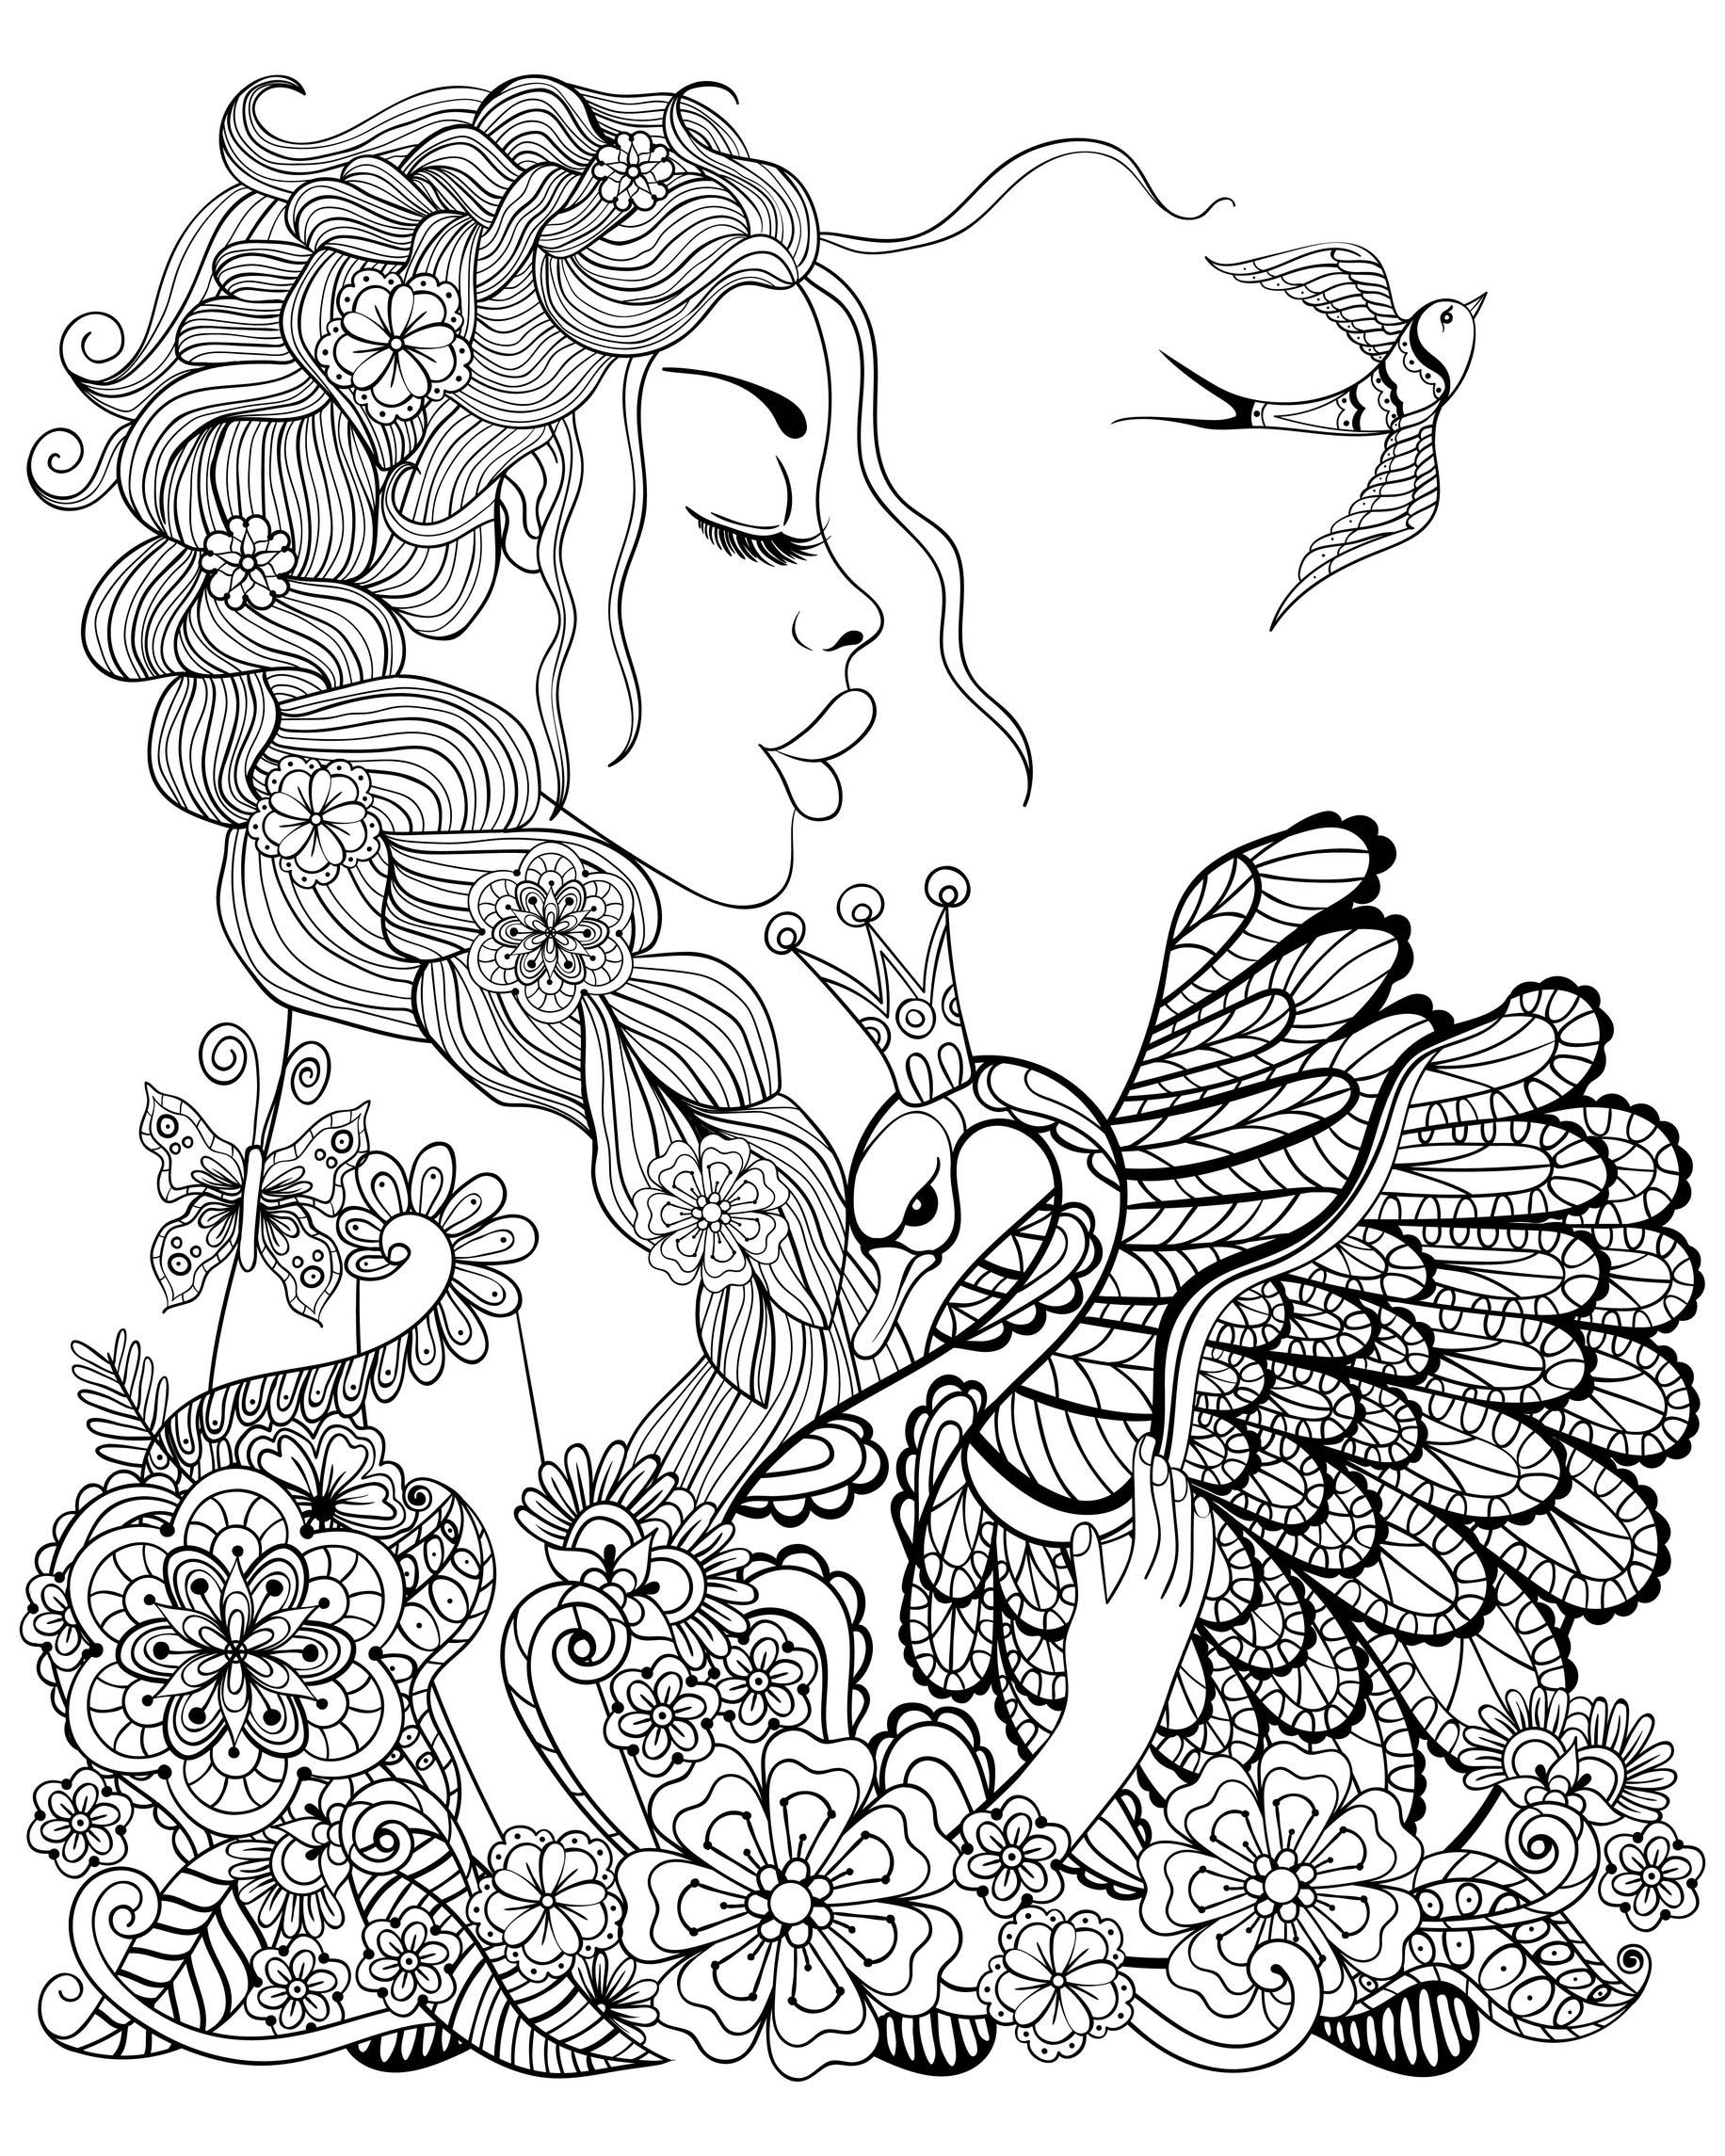 Femme Cygne Et Oiseau - Coloriage D&amp;#039;Oiseaux - Coloriages à Coloriage À Imprimer Oiseau